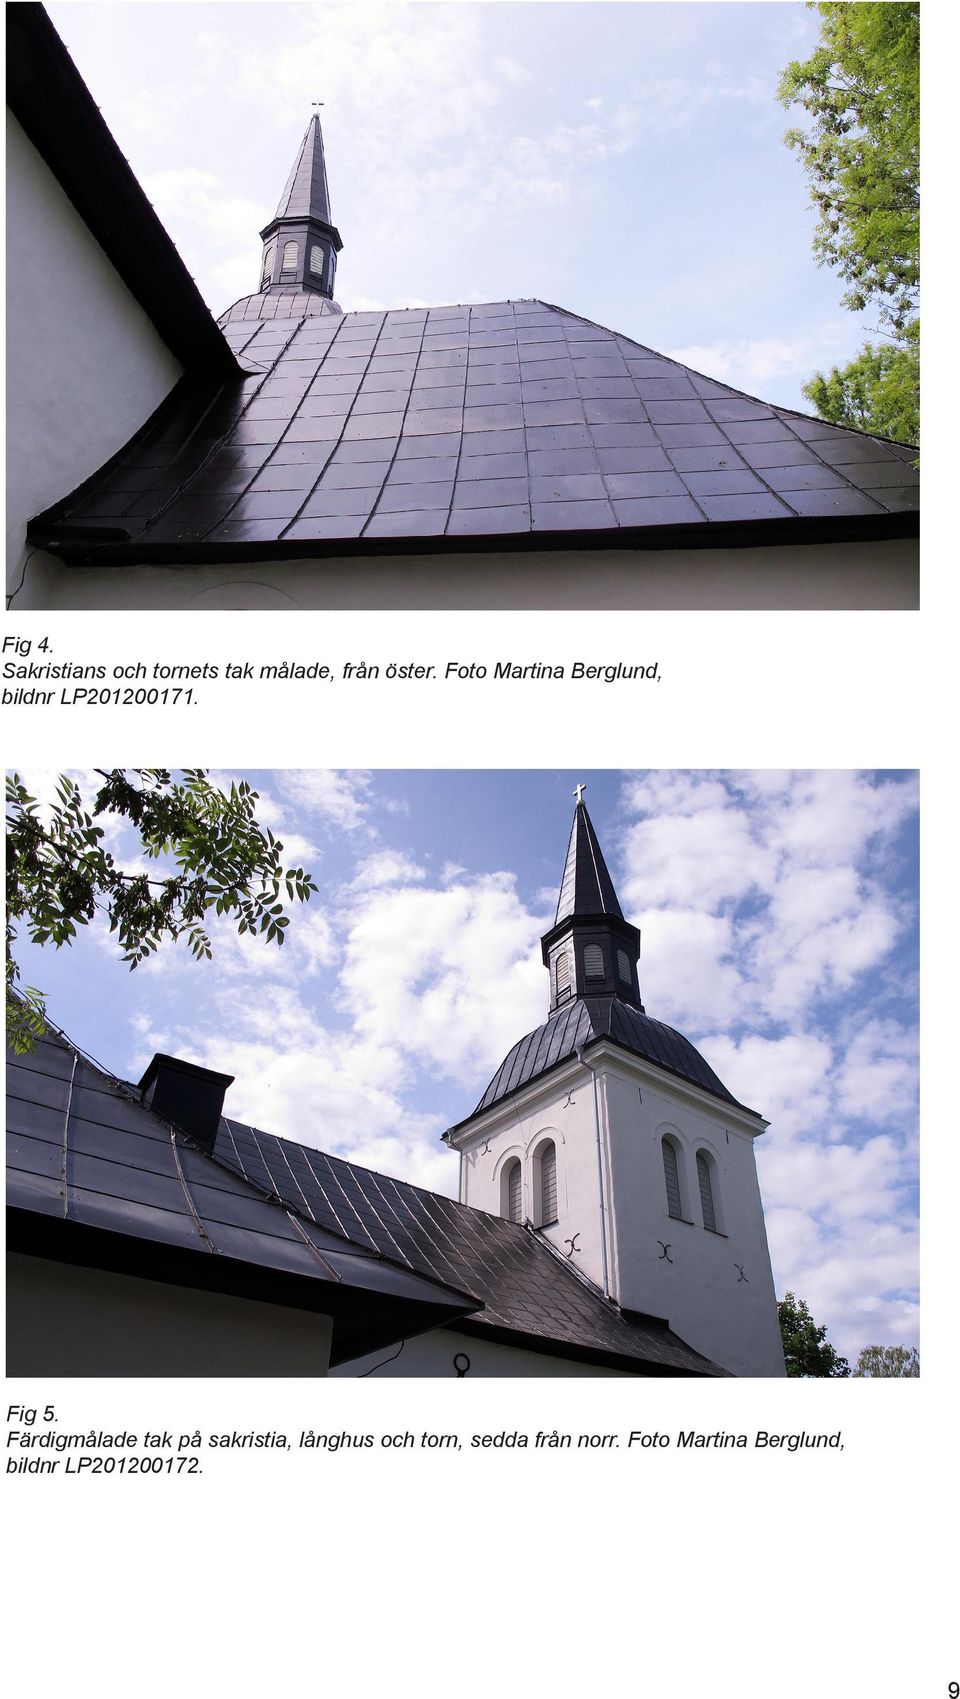 Färdigmålade tak på sakristia, långhus och torn,